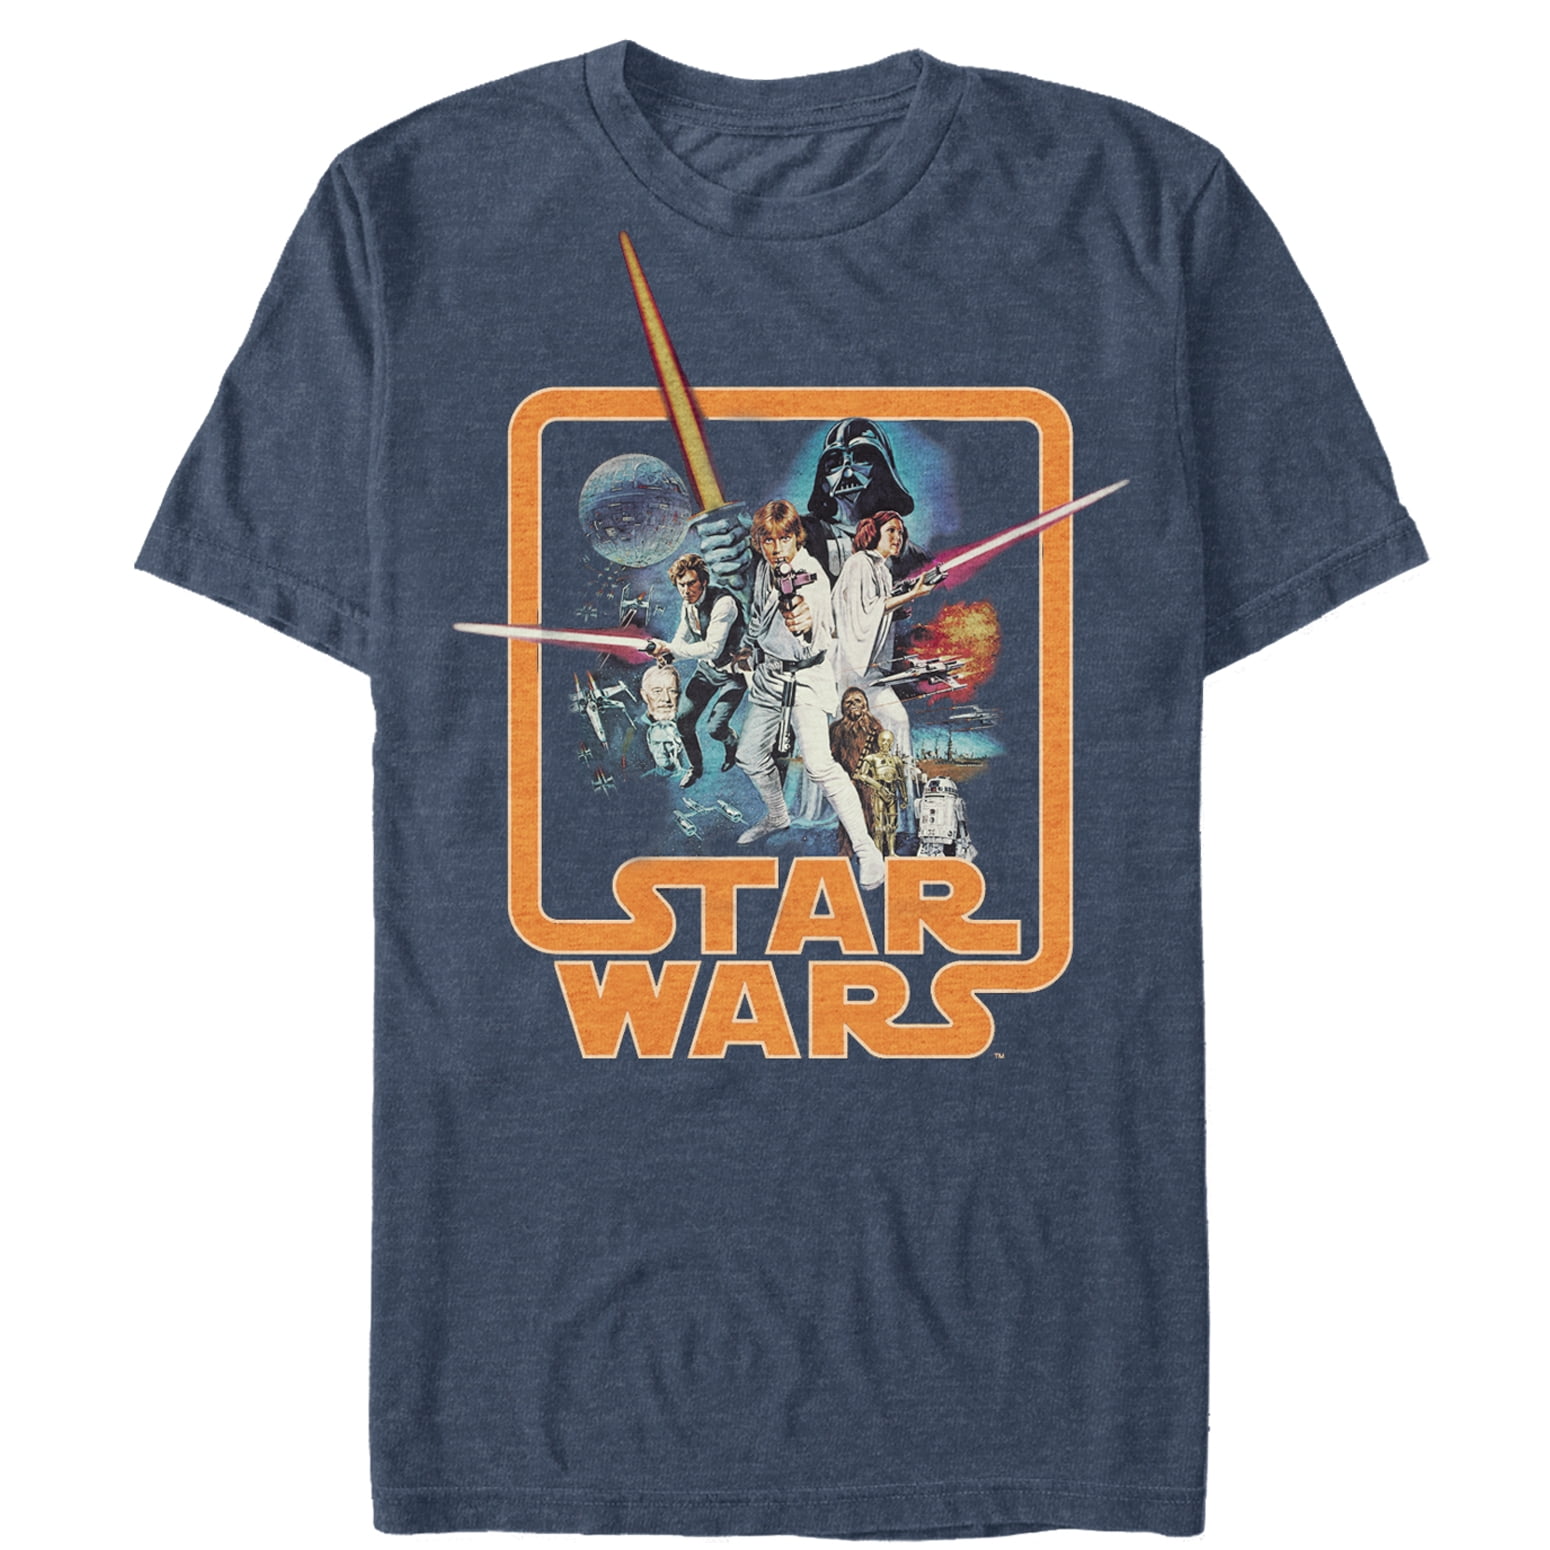 Star Wars - Men's Star Wars Throwback T-Shirt Navy Heather - Walmart